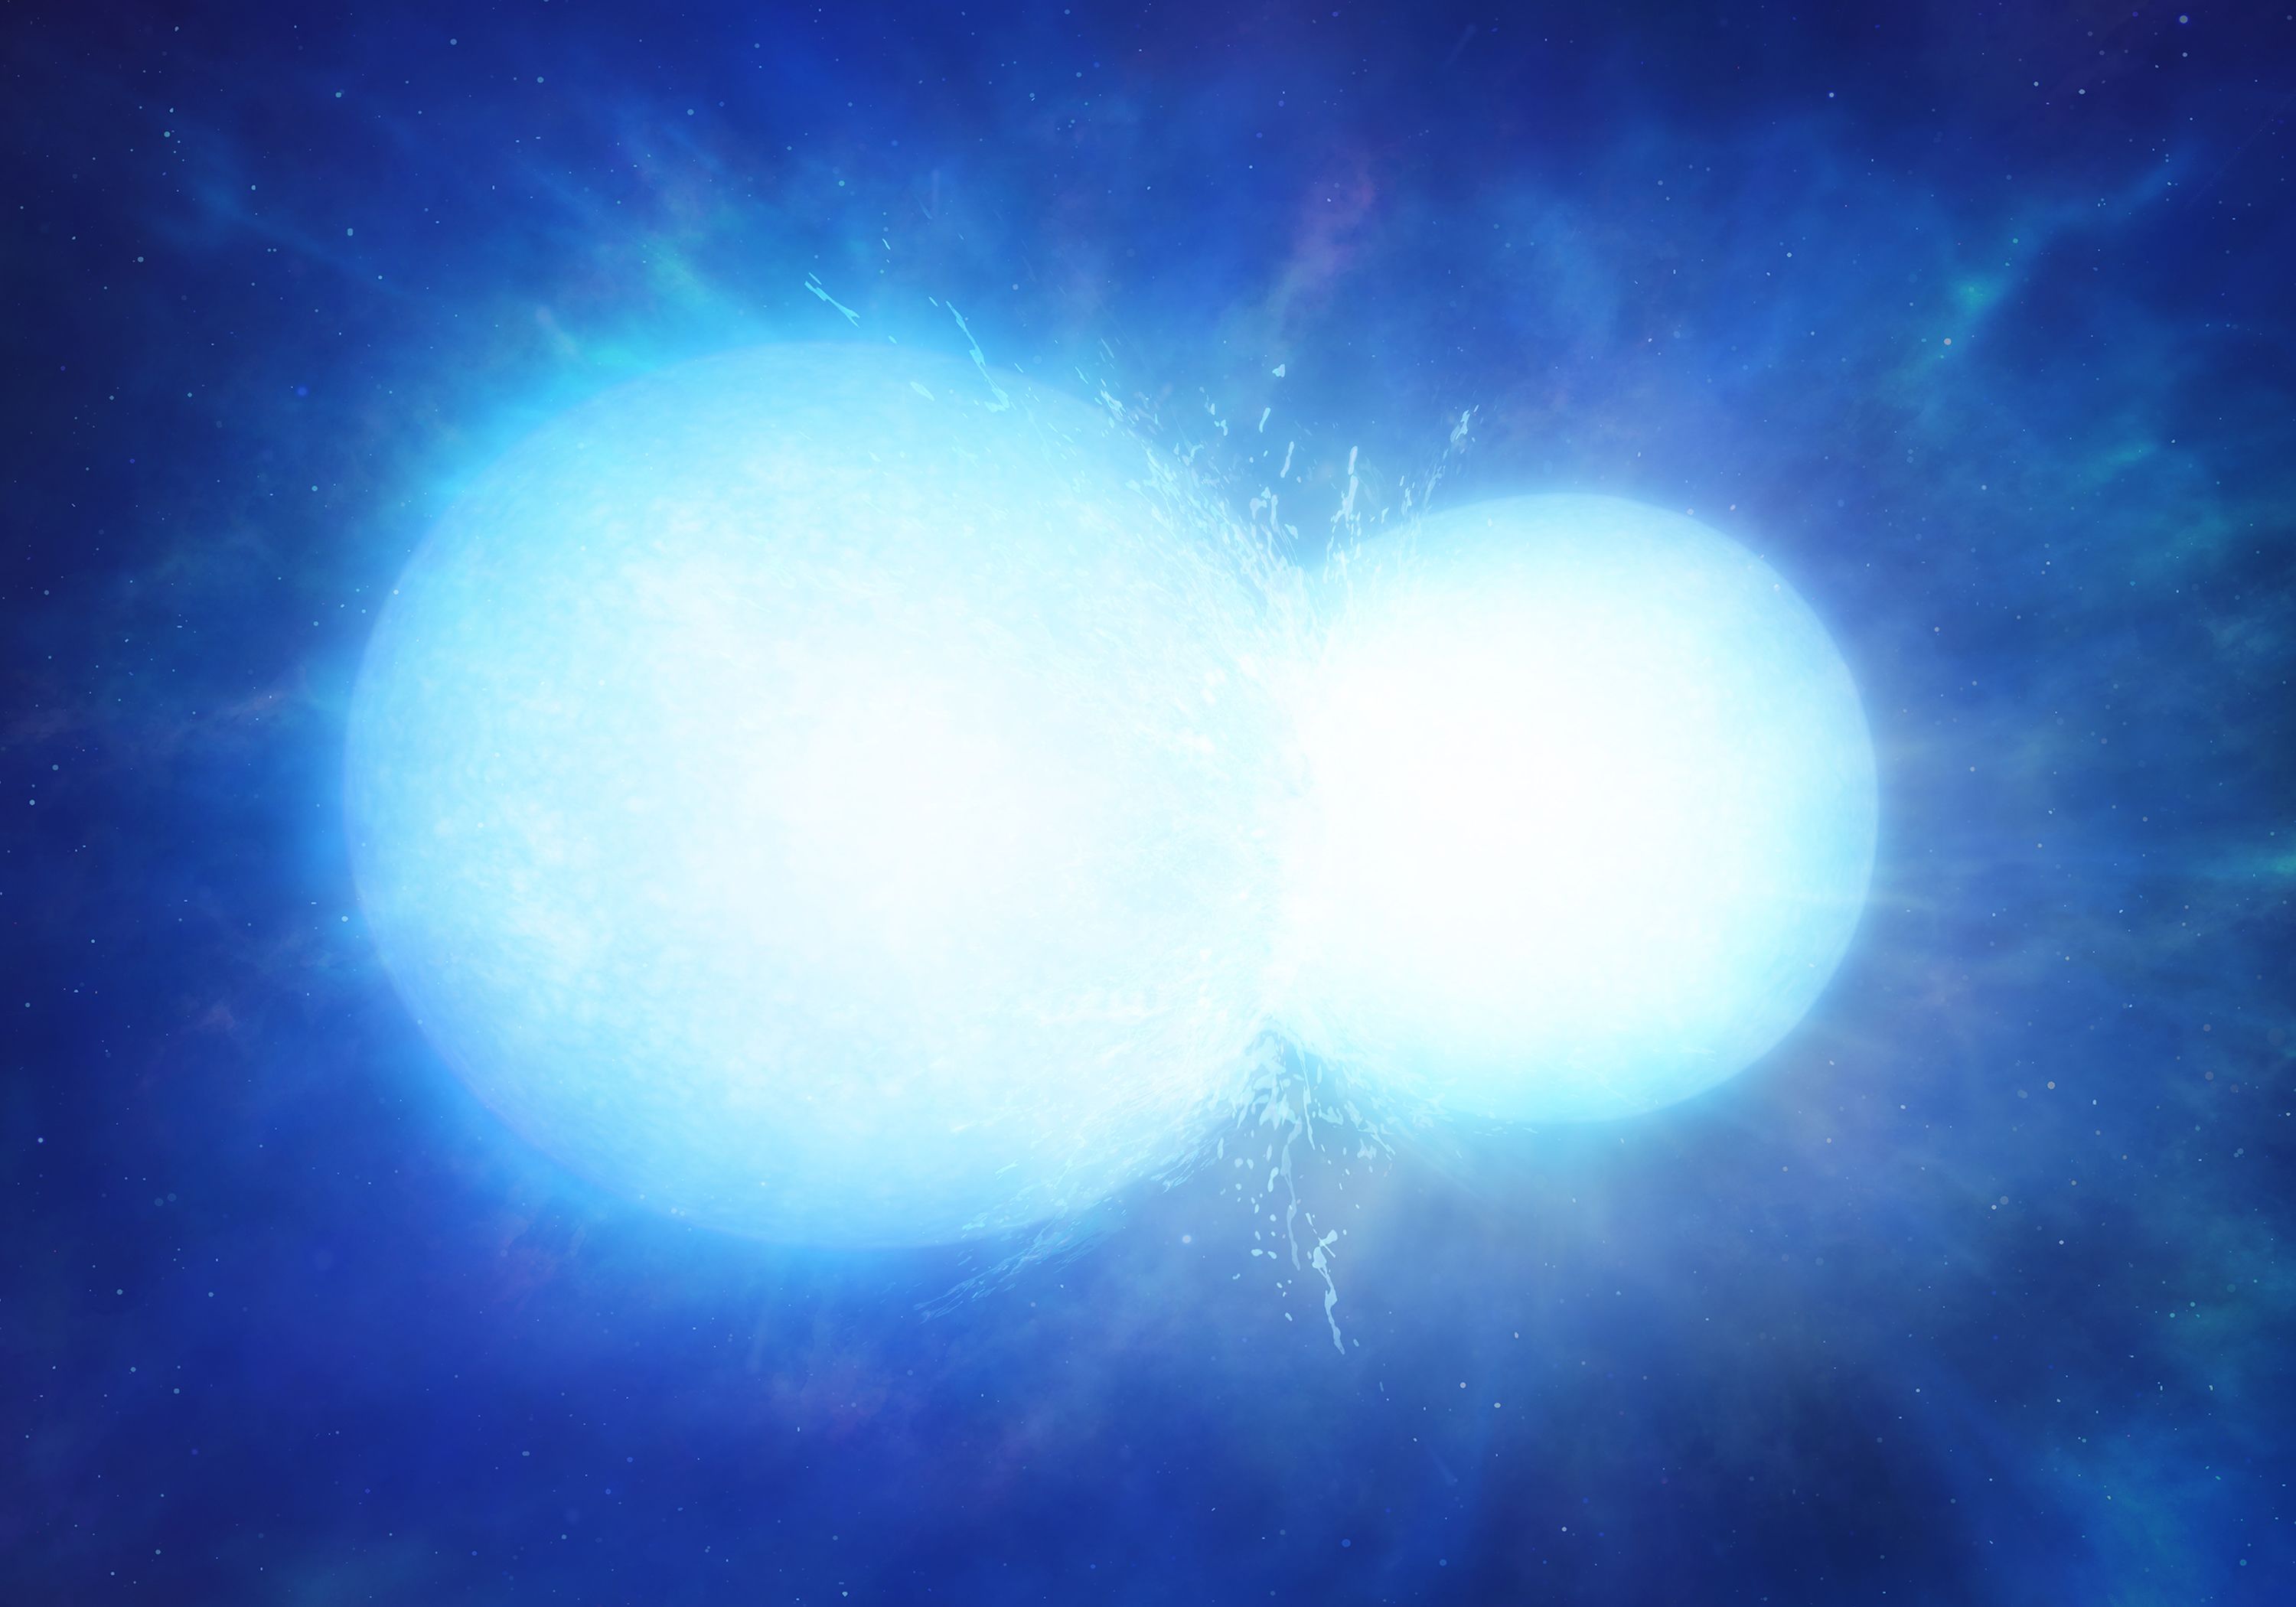 dwarf white massive star